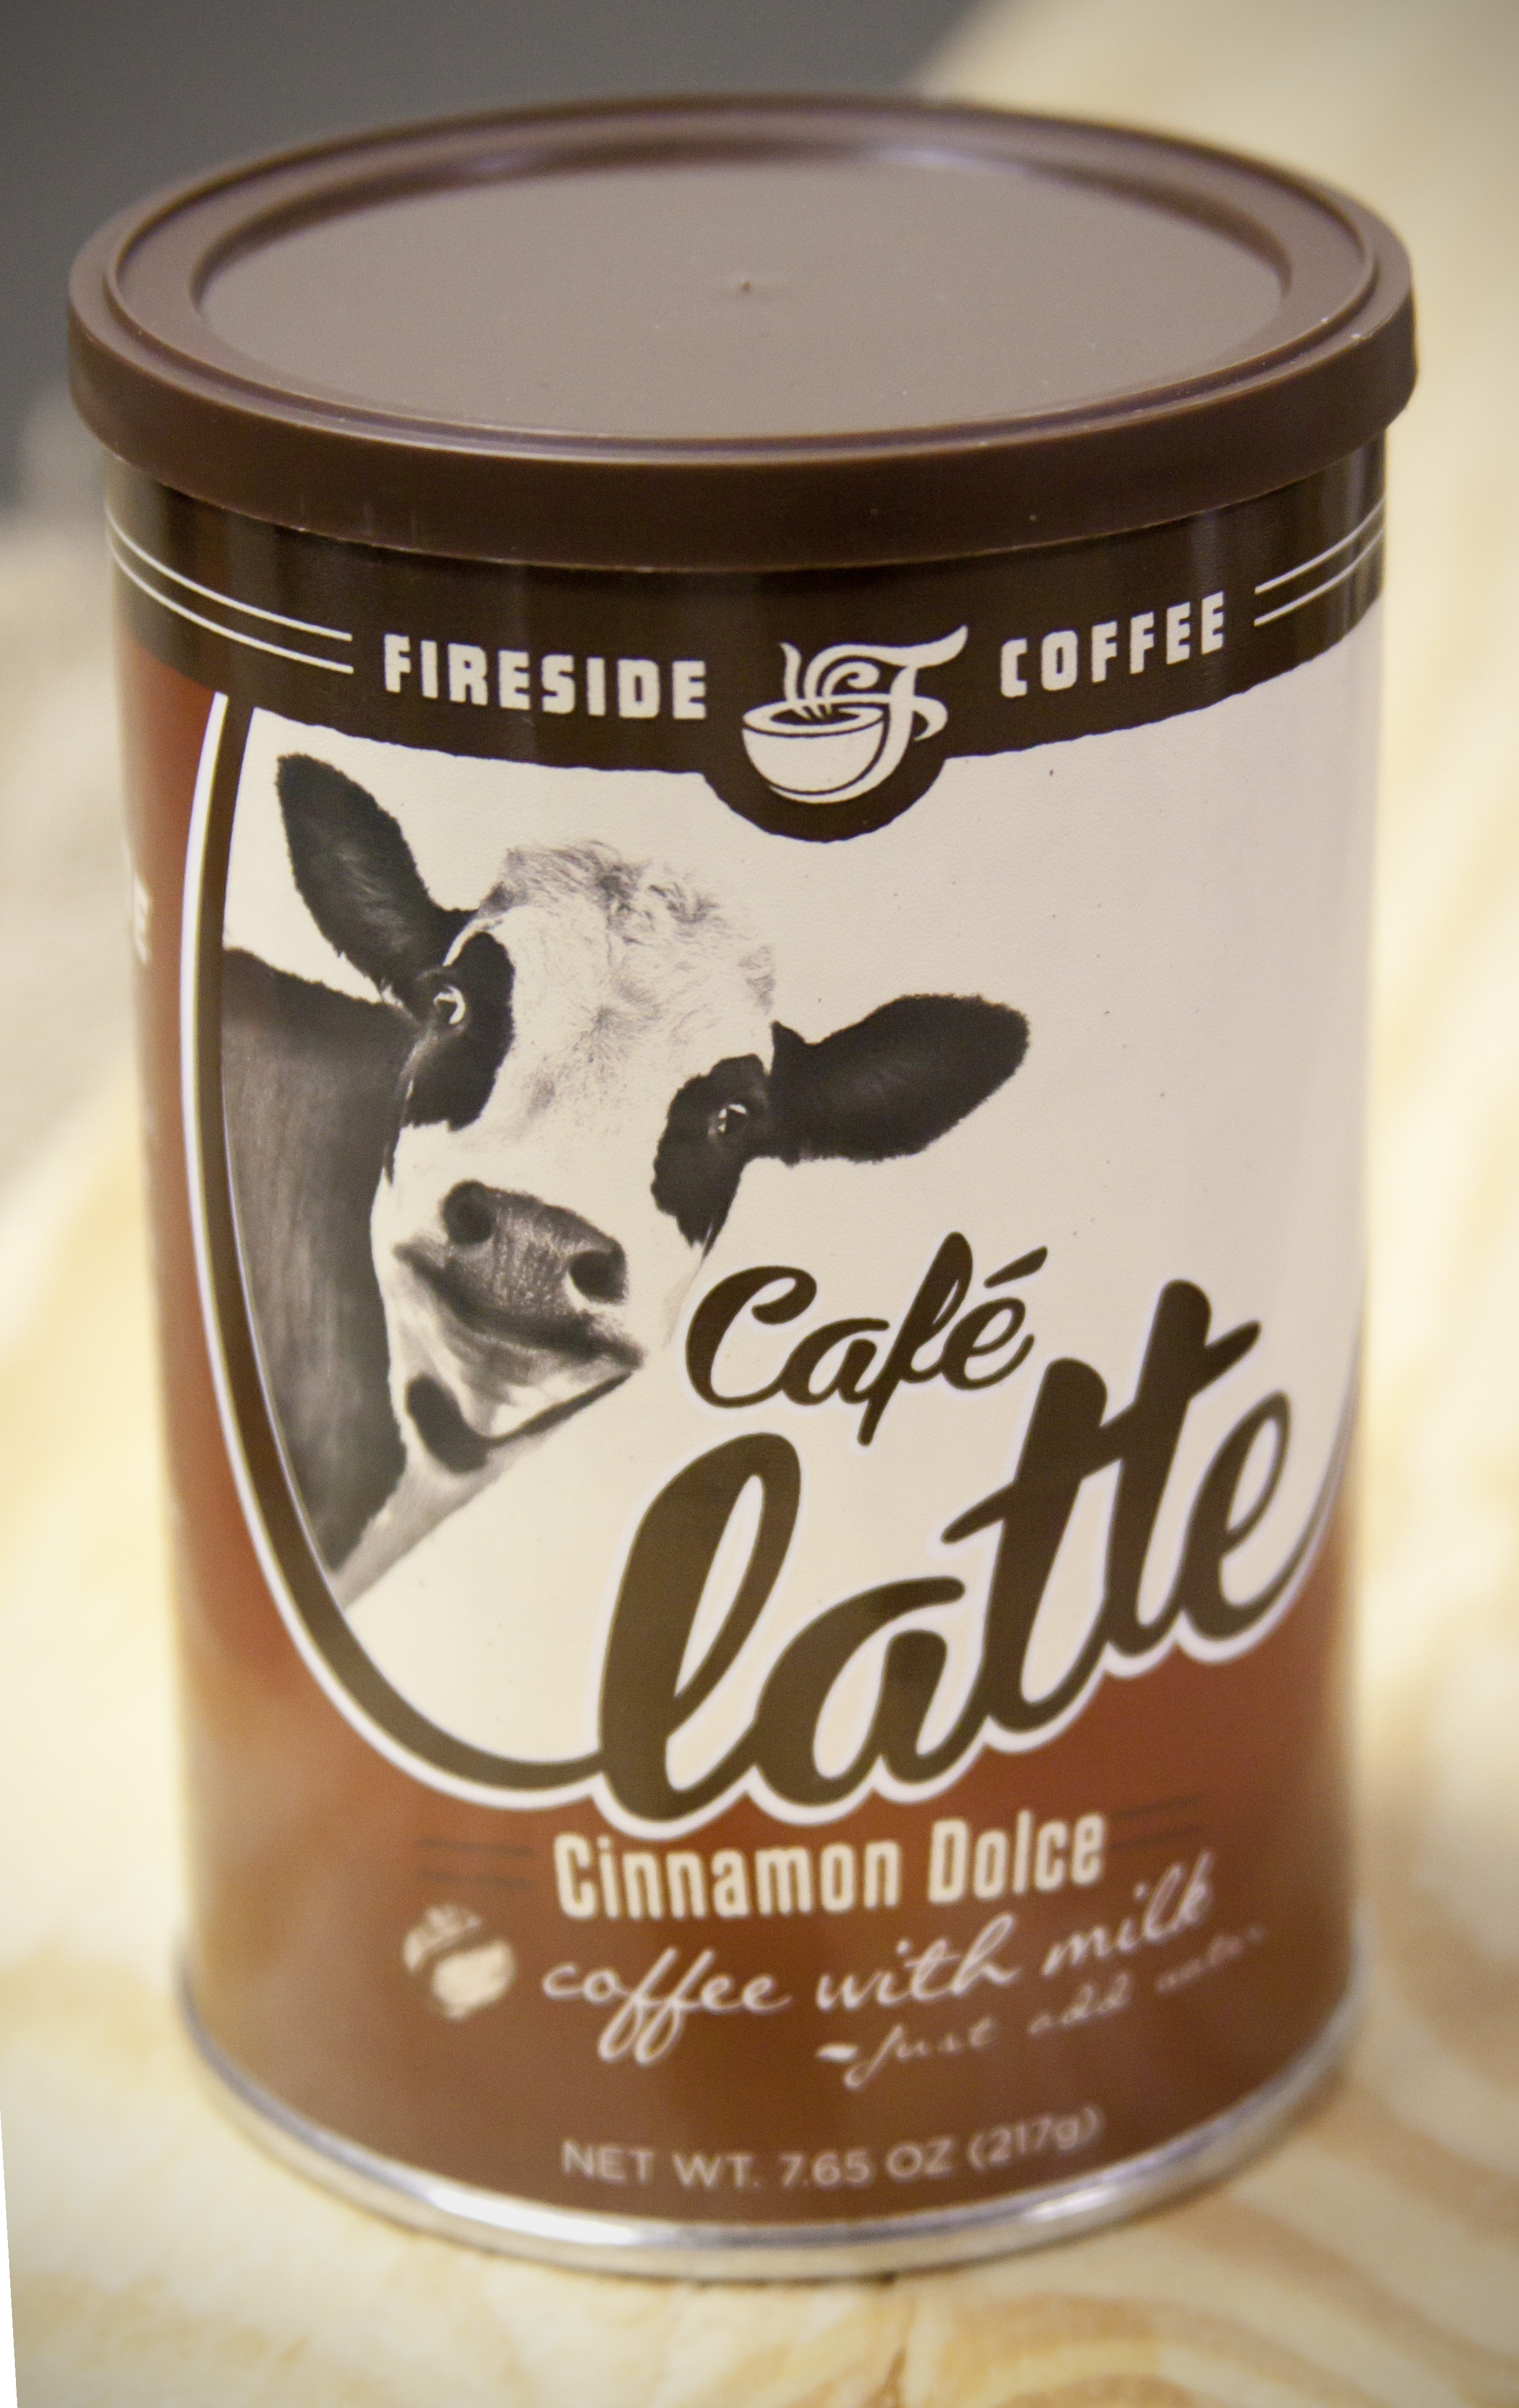 https://0201.nccdn.net/4_2/000/000/076/de9/Cafe-Latte-Cinnamon-Dolce.jpg